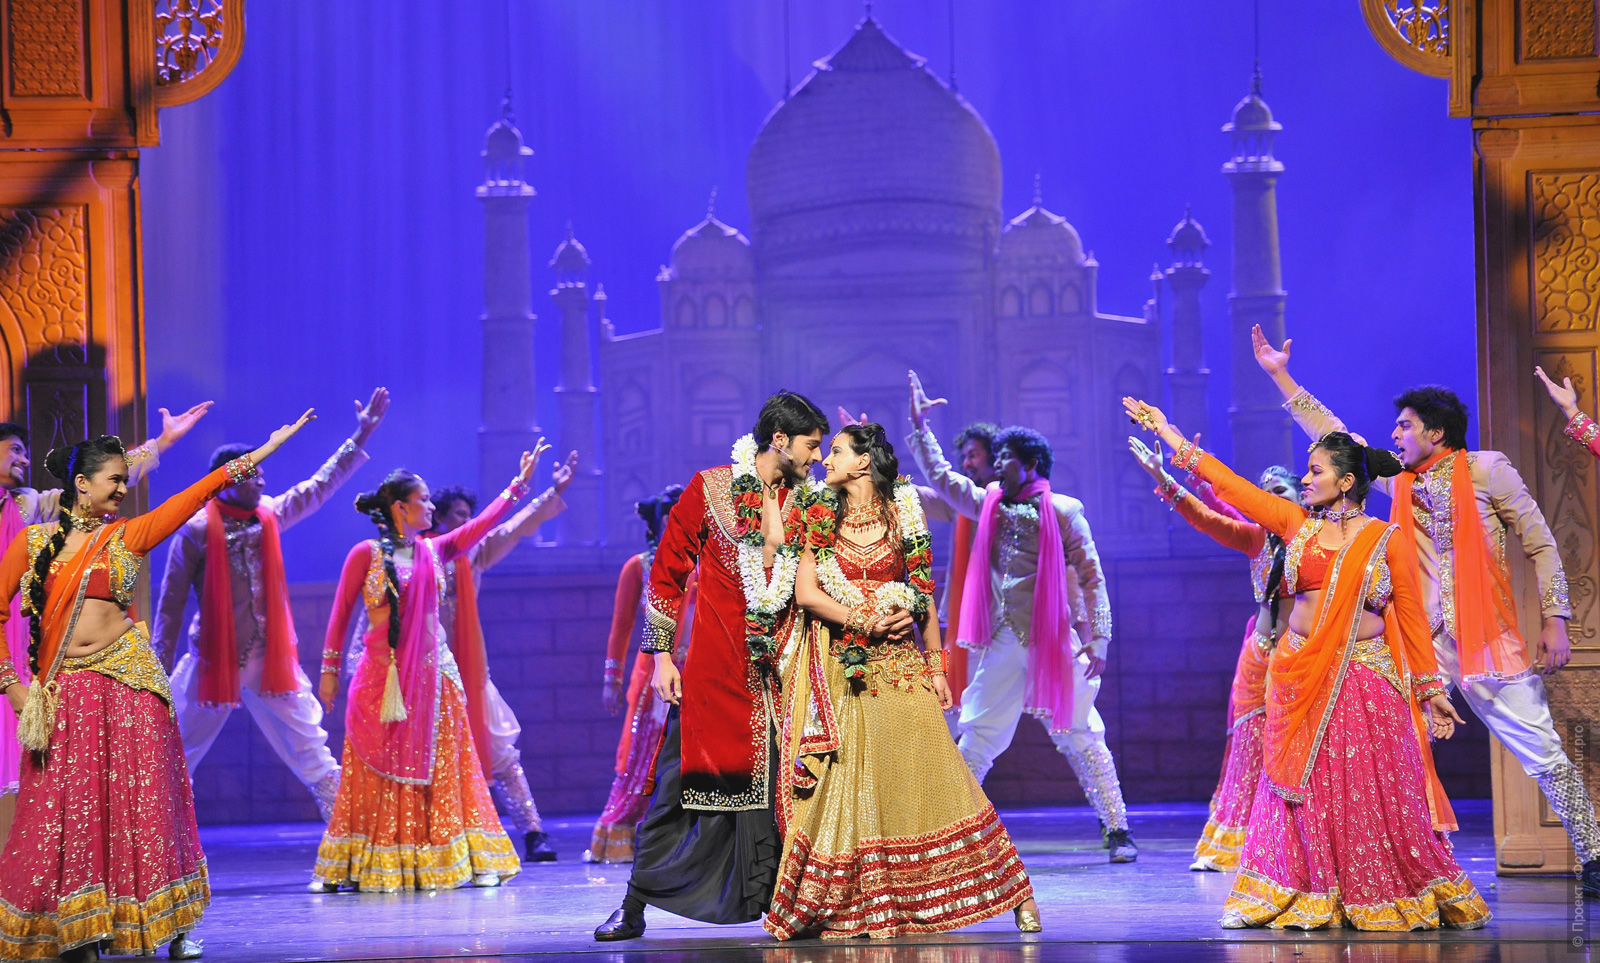 Театрализованного представление Тадж Махал, тур по Индии, май 2017 года.